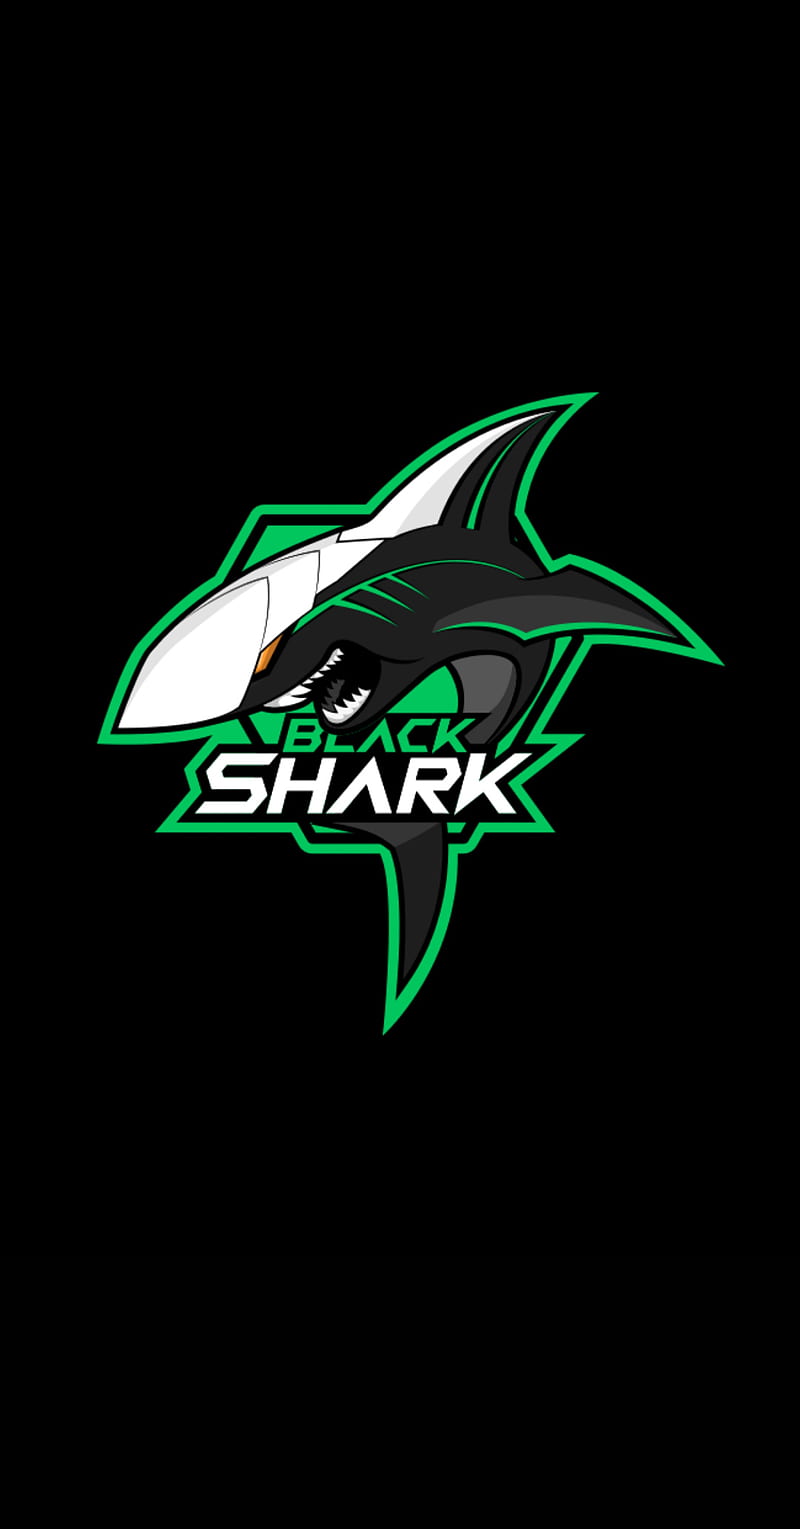 Blackshark Logo là biểu tượng của một thương hiệu smartphone nổi tiếng với thiết kế mạnh mẽ và hiệu năng ấn tượng. Hãy tải về những hình nền Blackshark Logo để thể hiện cá tính và sự mạnh mẽ của bạn trên chiếc điện thoại trong mỗi lần sử dụng nó.